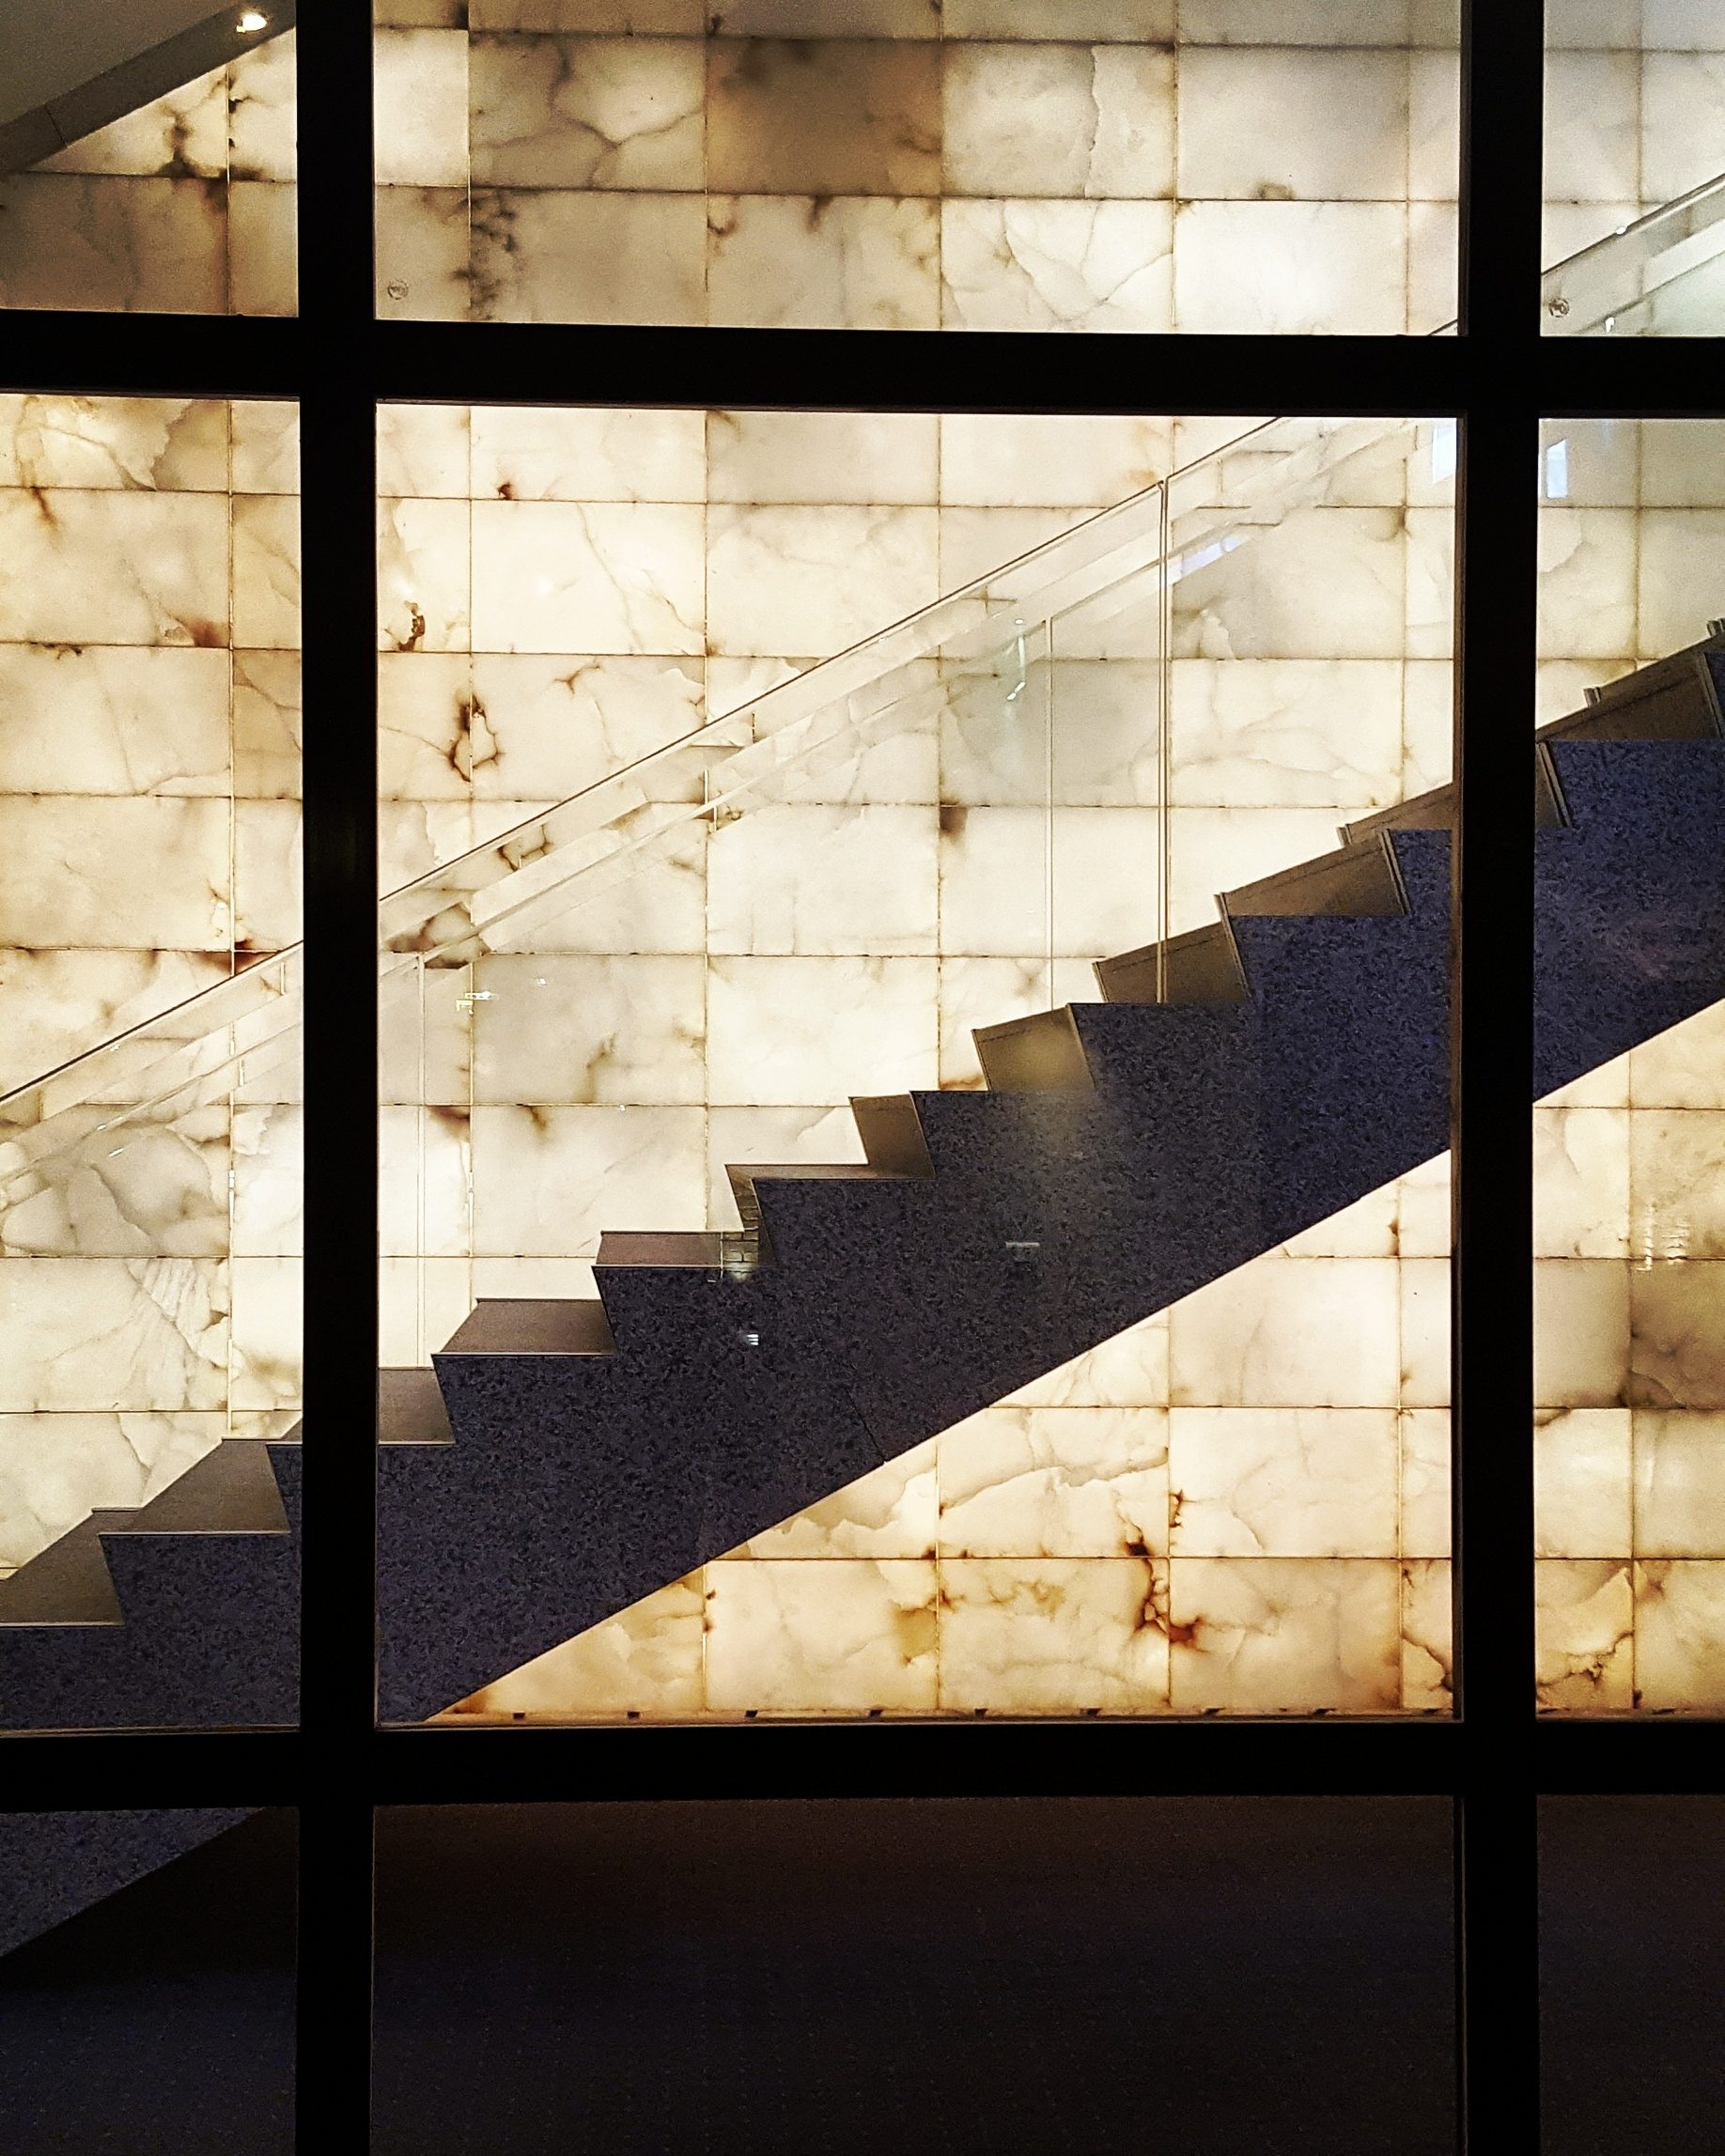 Vichy la magnifique/aufildeslieux.fr/Escalier en granite menant au restaurant du Palais des congrès©K.Hibbs